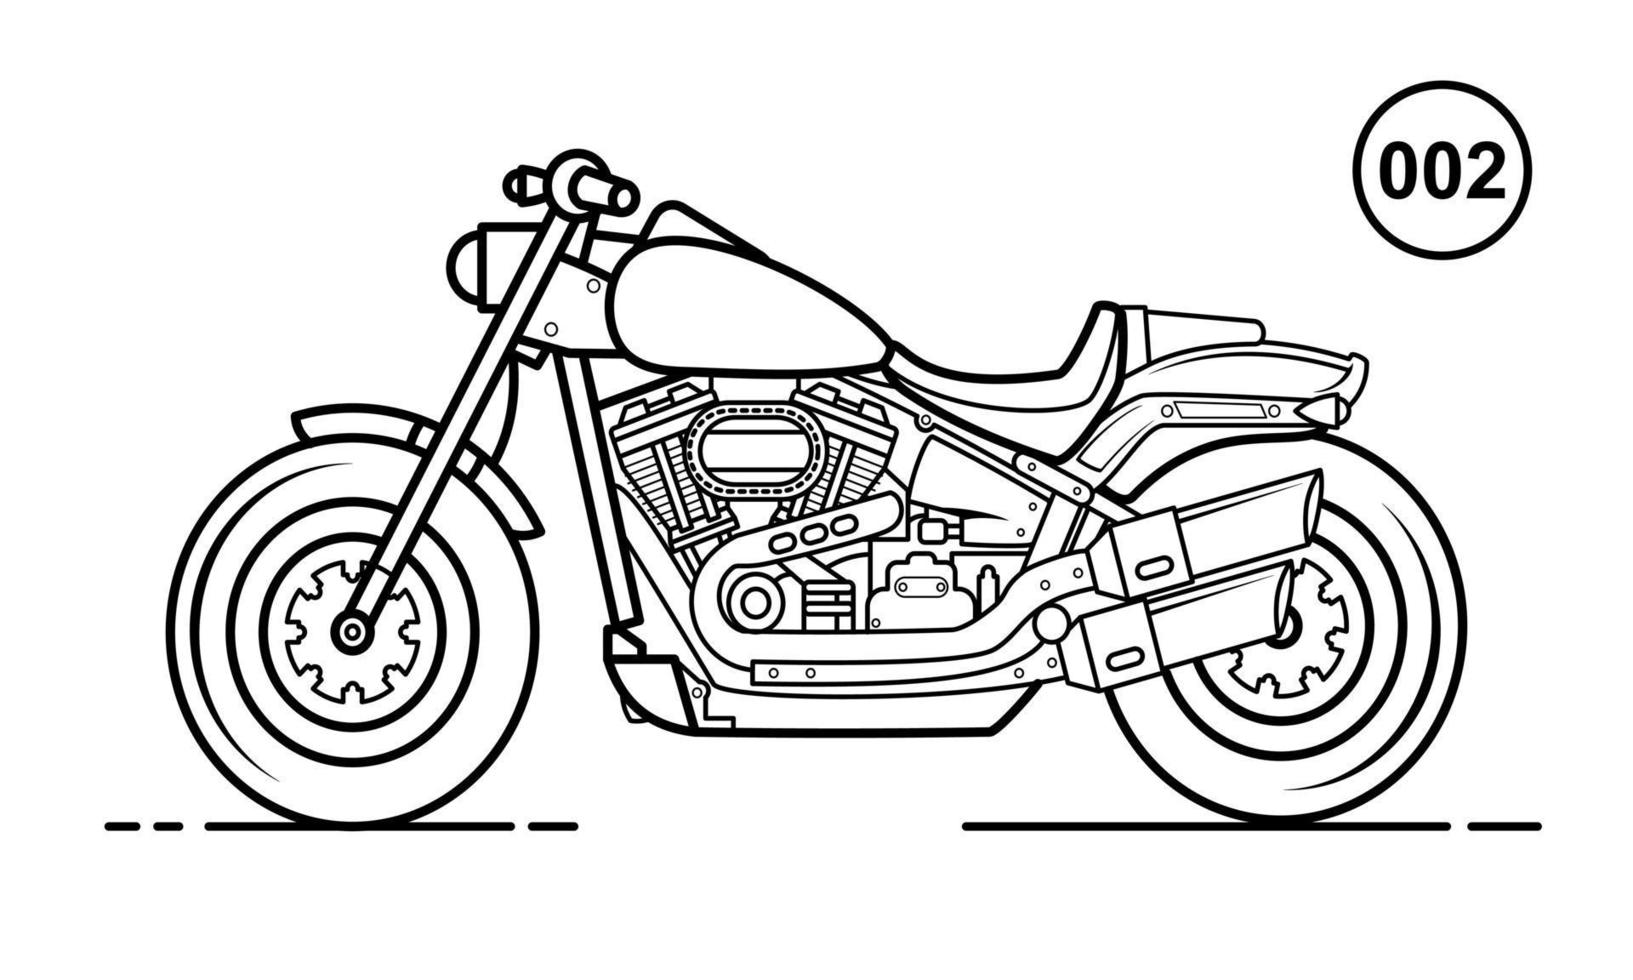 diseño de contorno de motocicleta para el estilo de libro de dibujo 002 vector